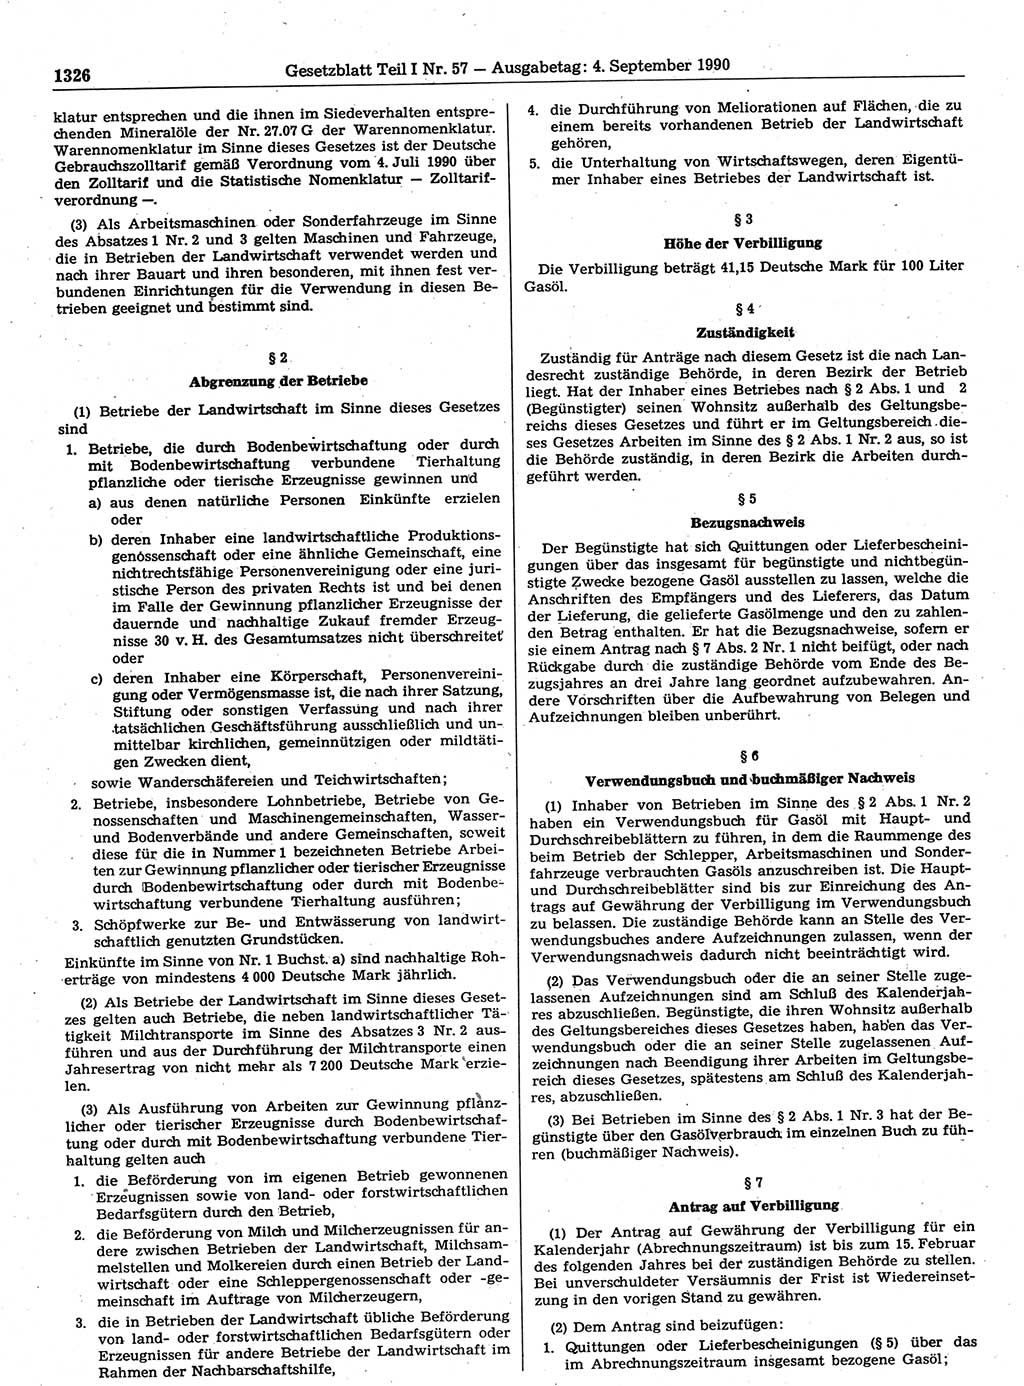 Gesetzblatt (GBl.) der Deutschen Demokratischen Republik (DDR) Teil Ⅰ 1990, Seite 1326 (GBl. DDR Ⅰ 1990, S. 1326)